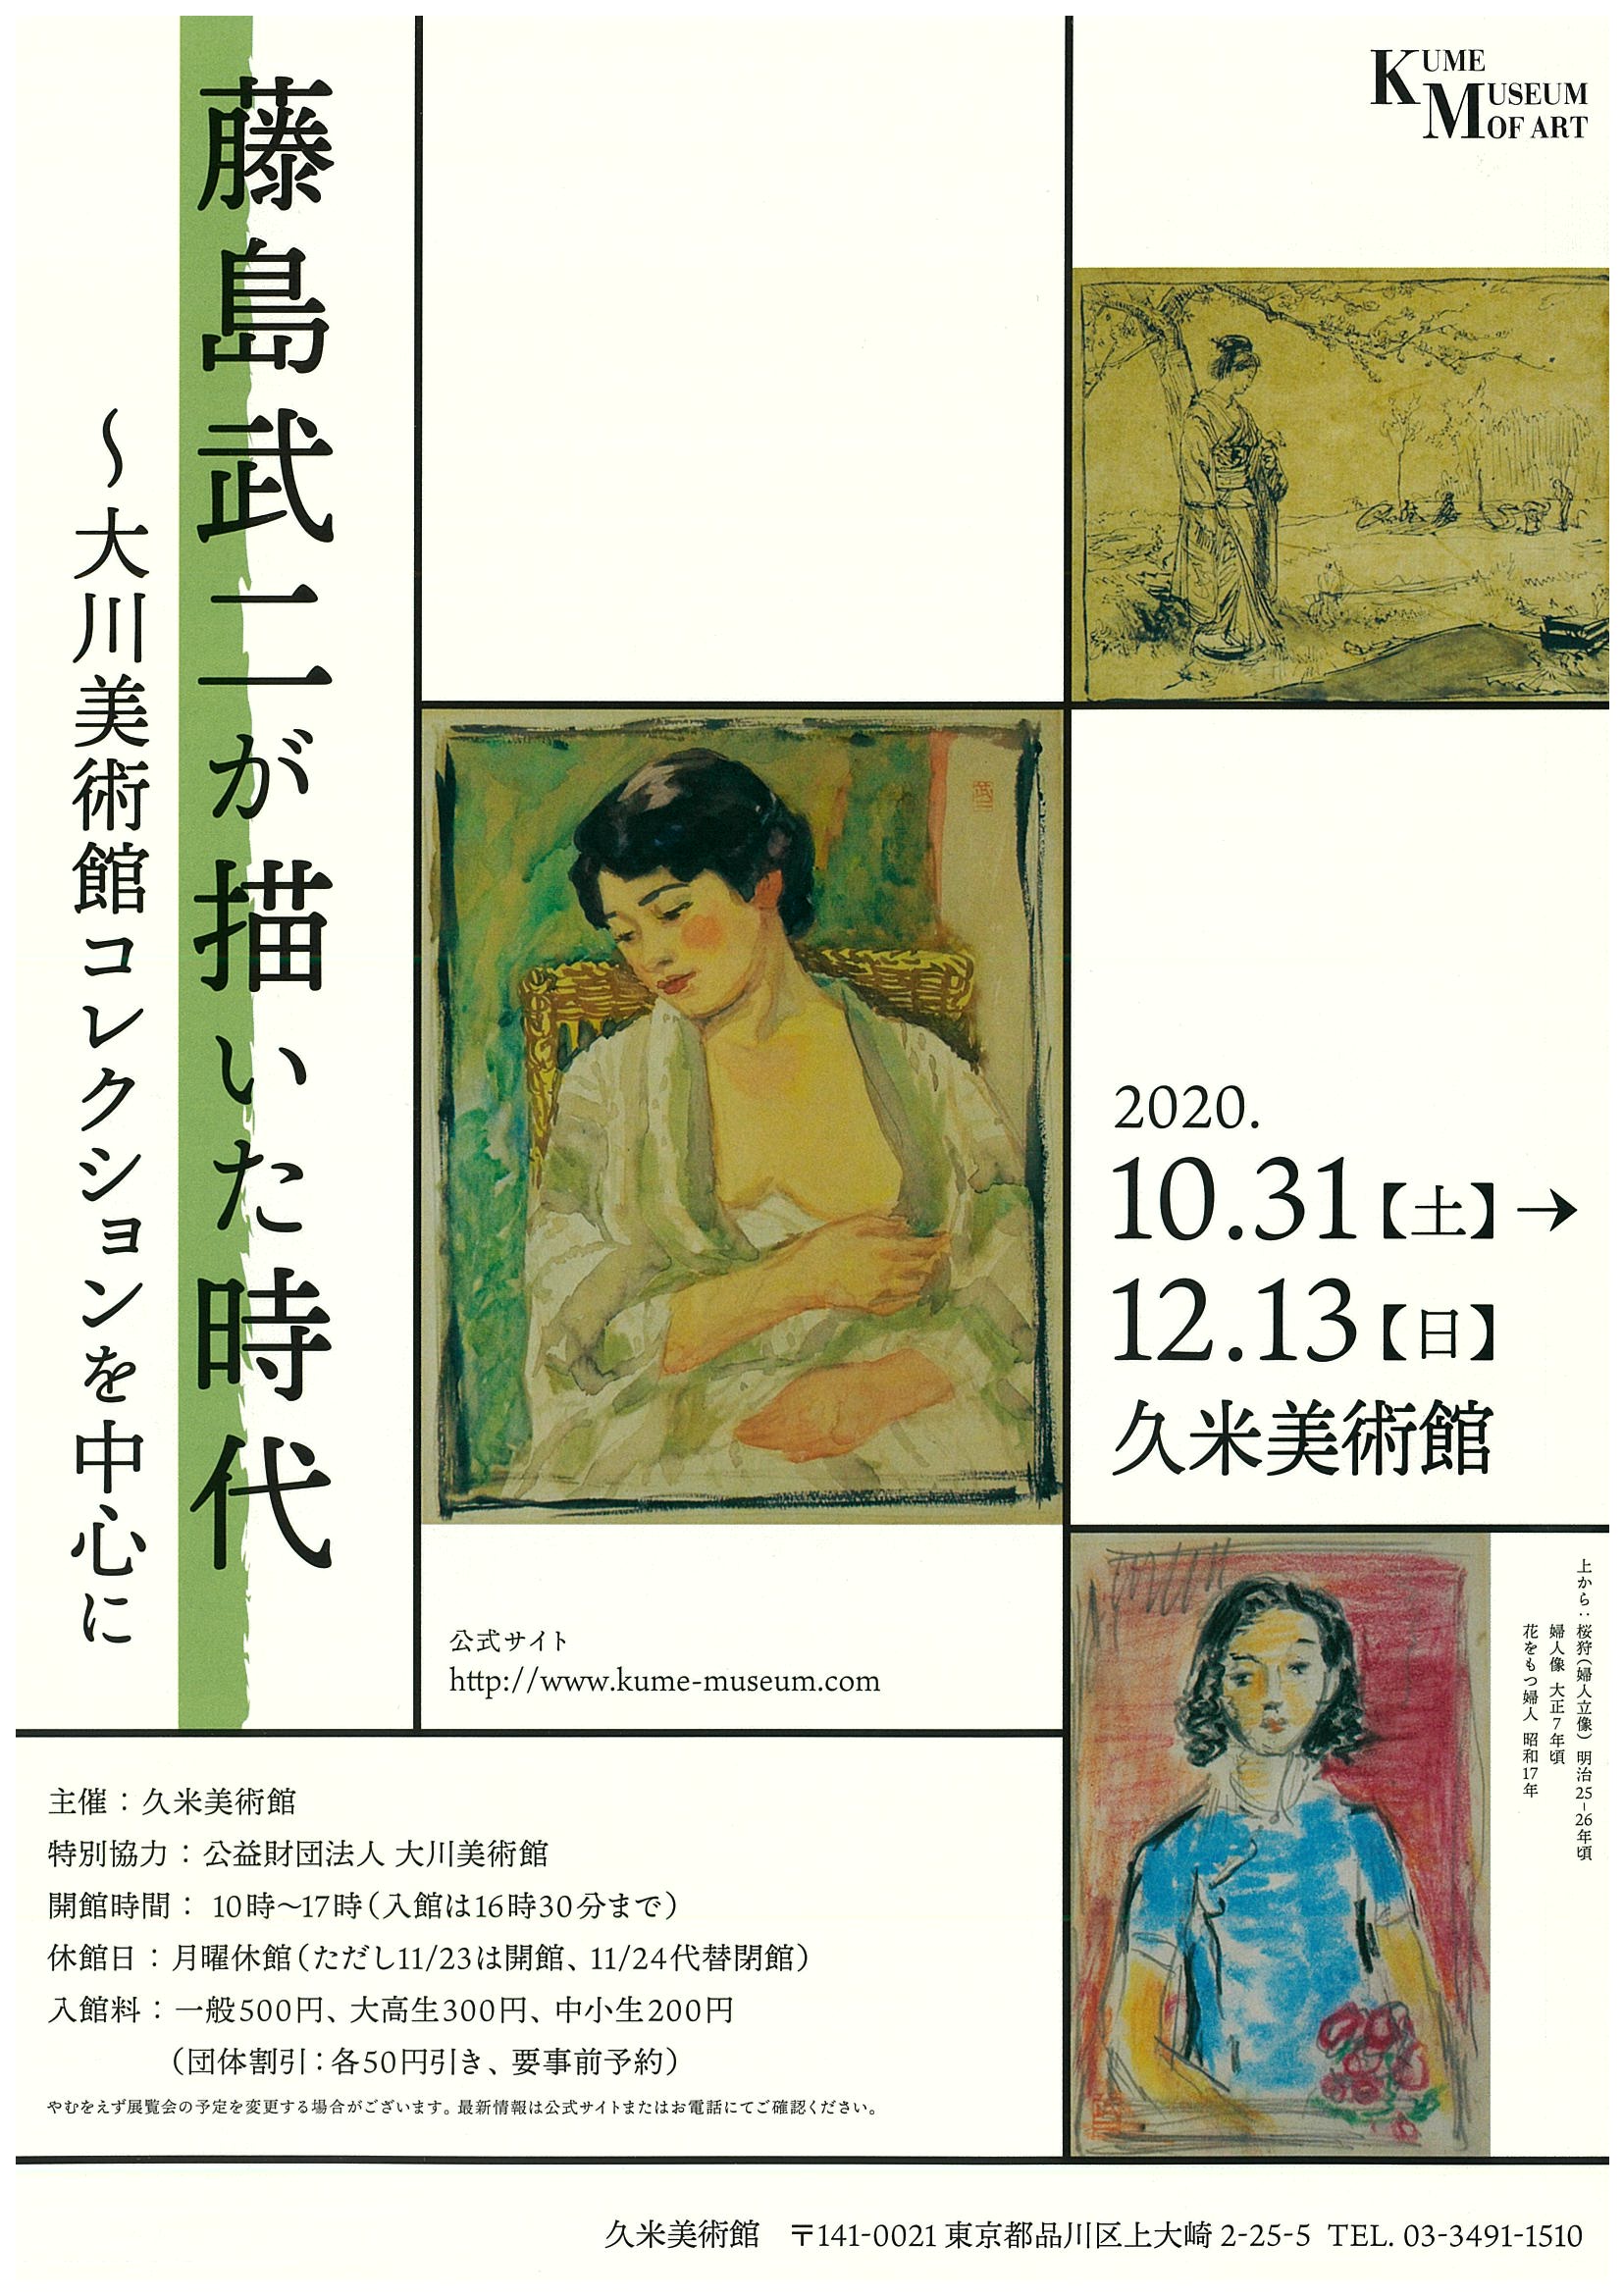 
10月31日（土）～
　　　　12月13日（日）
久米美術館にて
「藤島武二が描いた時代」
大川美術館コレクションを中心に
